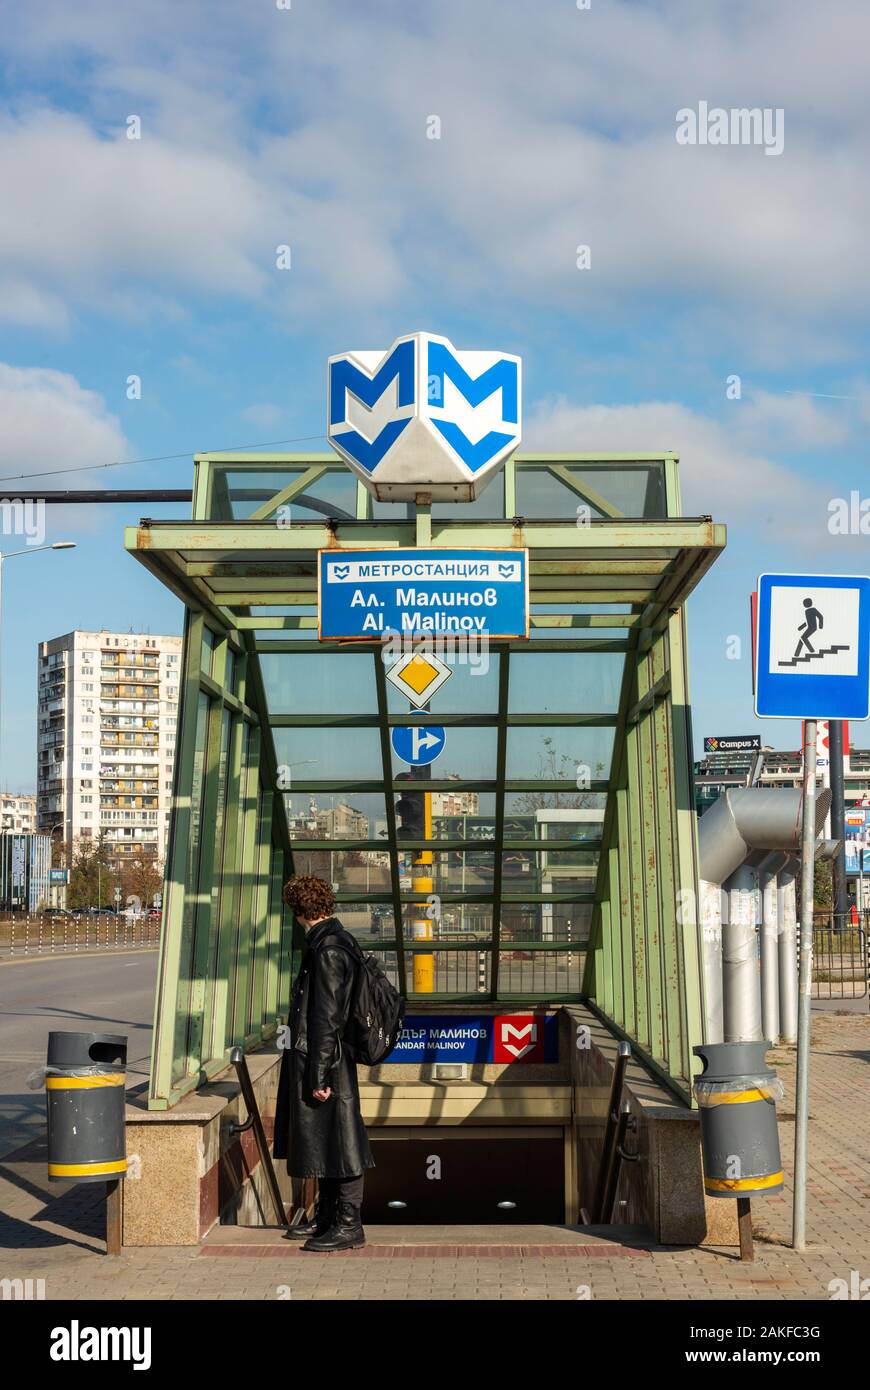 Blick auf die Straße mit typischem Aluminium- und Glaseingang der U-Bahn oder U-Bahn oder U-Bahn-Station in Sofia, Bulgarien, Osteuropa, Balkan, EU Stockfoto